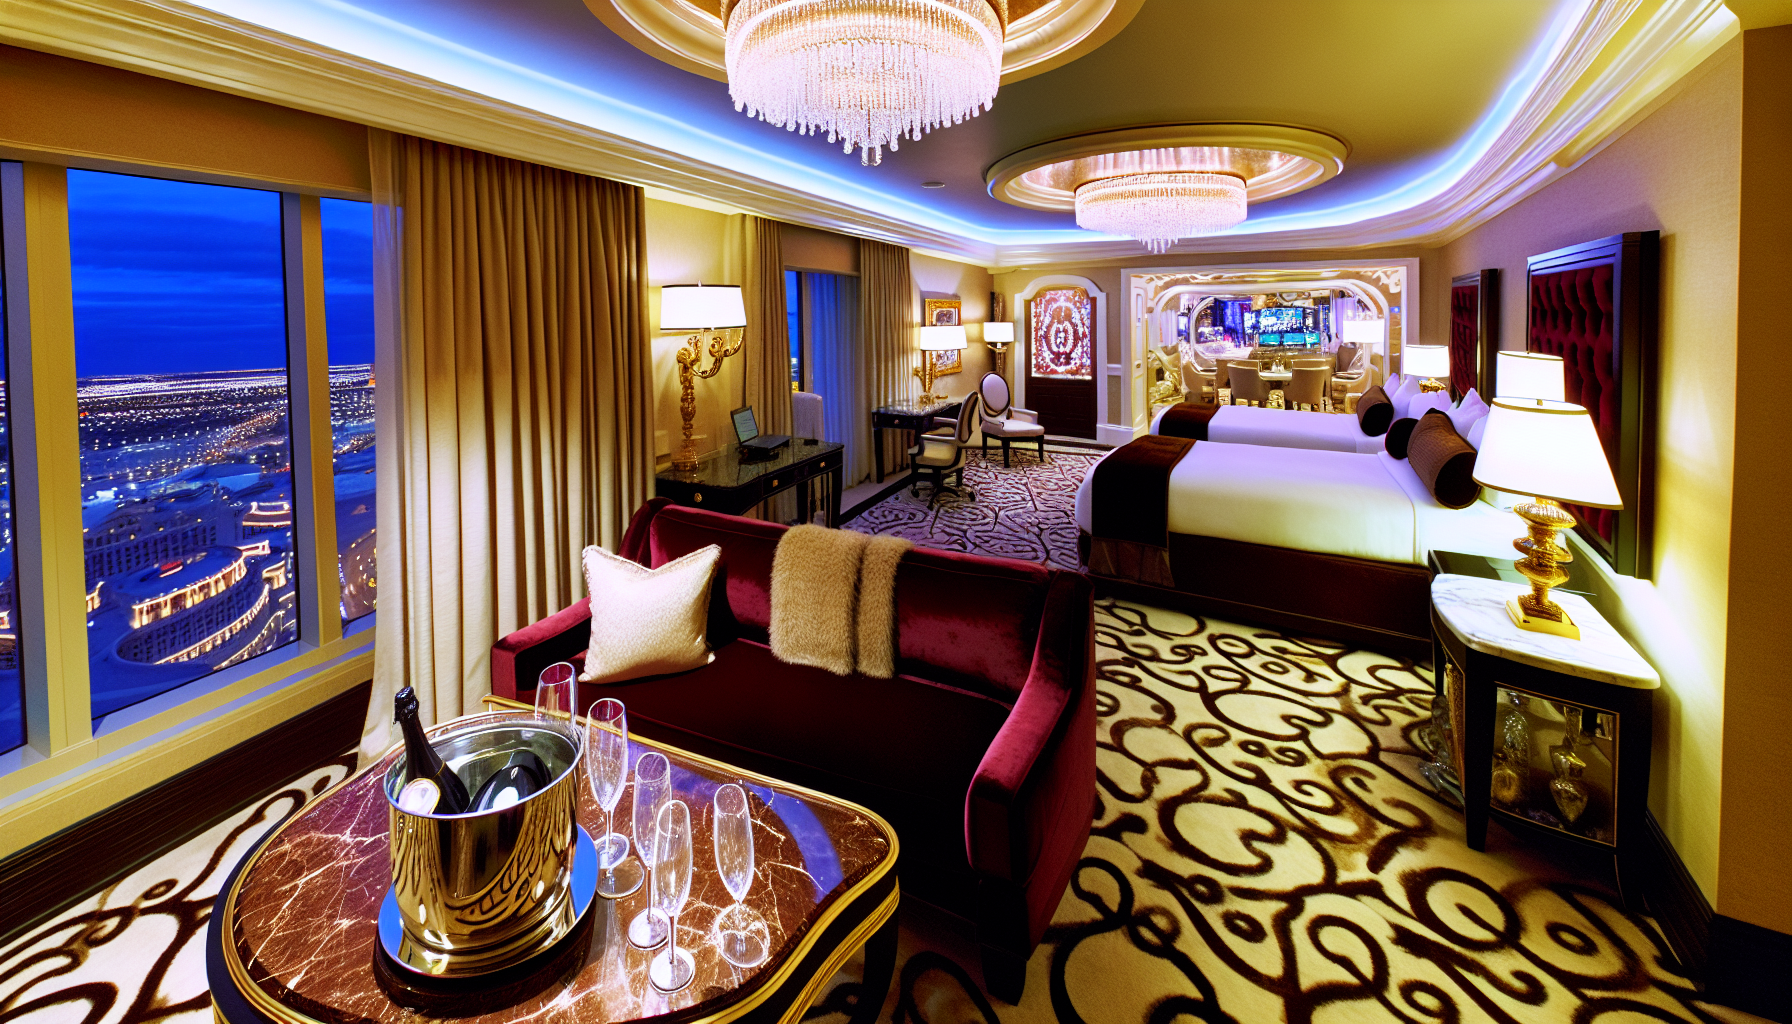 Luxury suite in a top gambling casinos